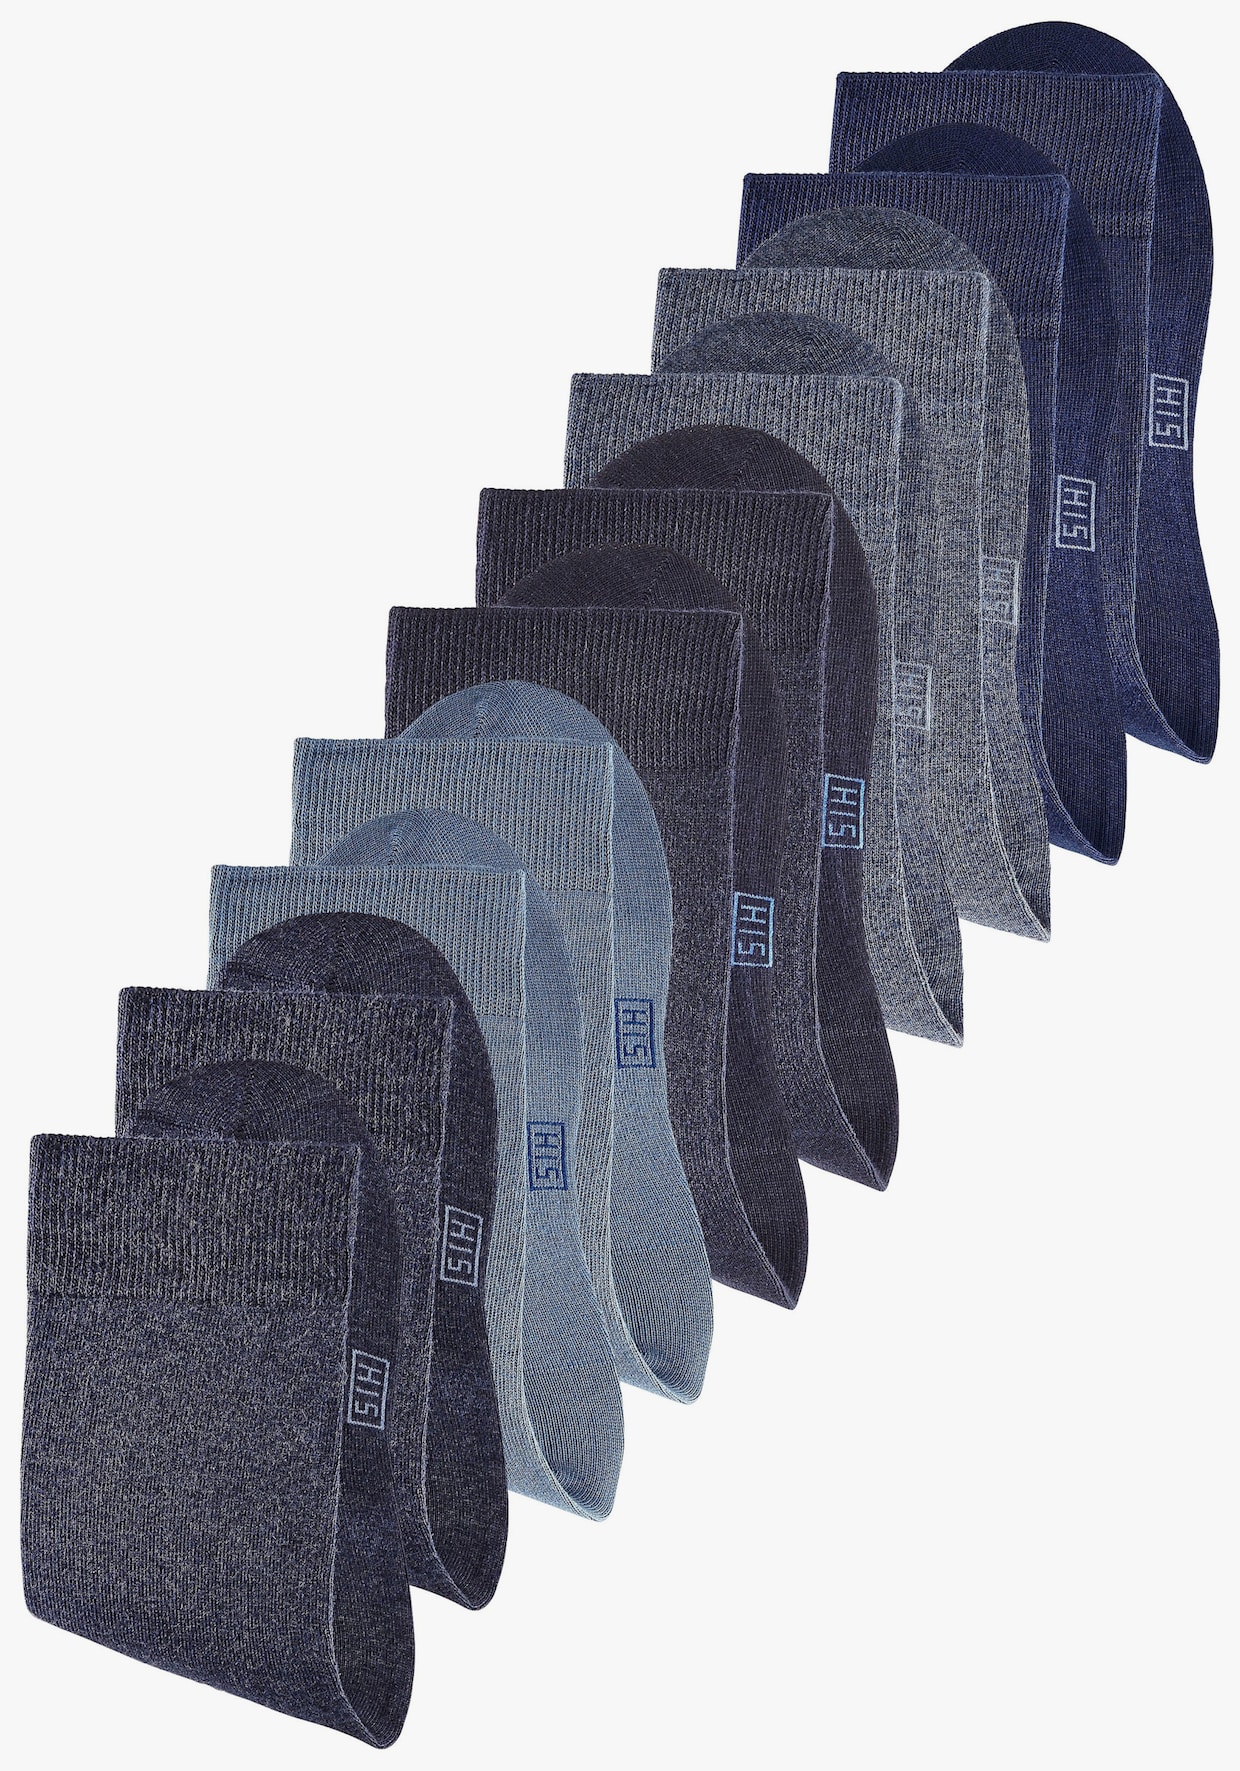 H.I.S Enkelsokken - marine, jeans, donkerblauw